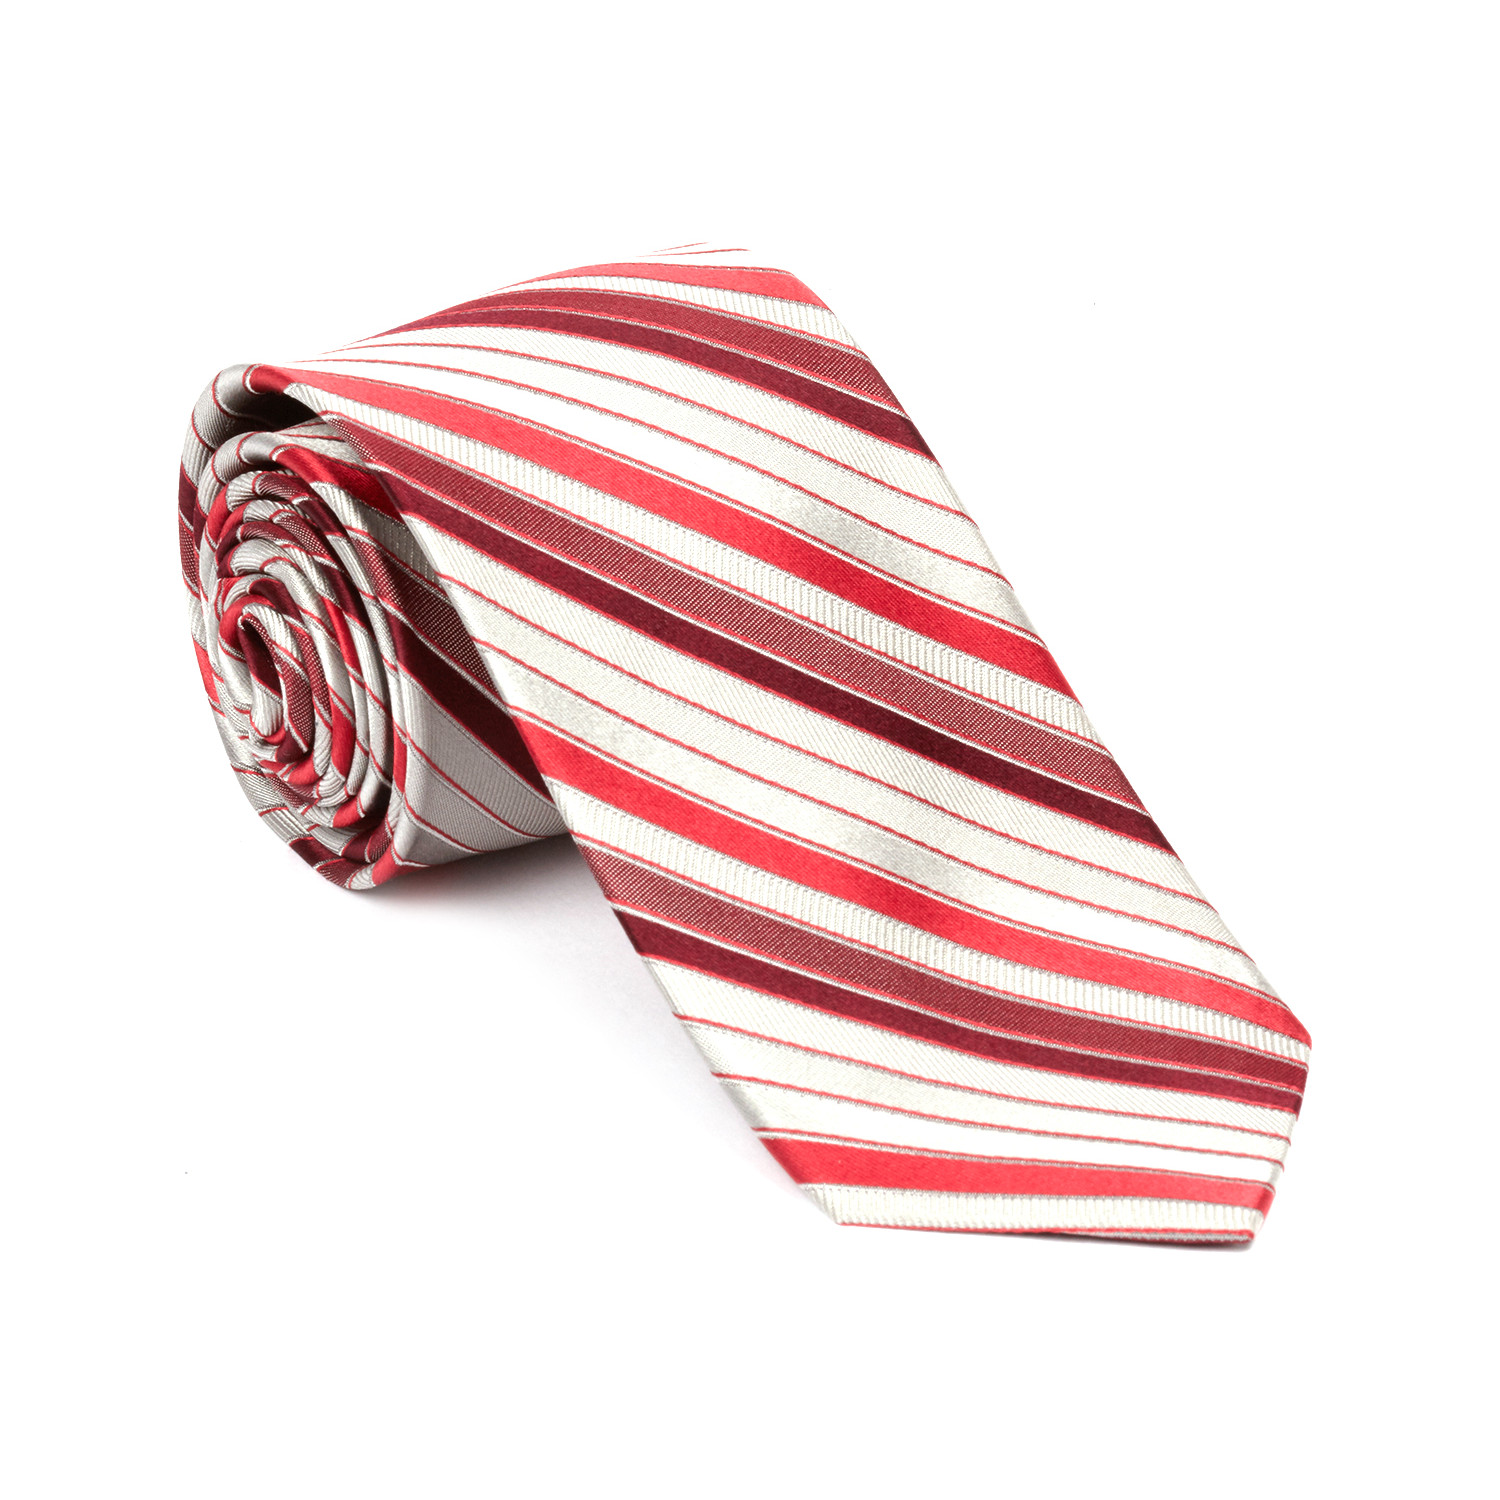 Narrow Width Silk Tie // Silver + Red Stripe - Alâra Ties - Touch of Modern